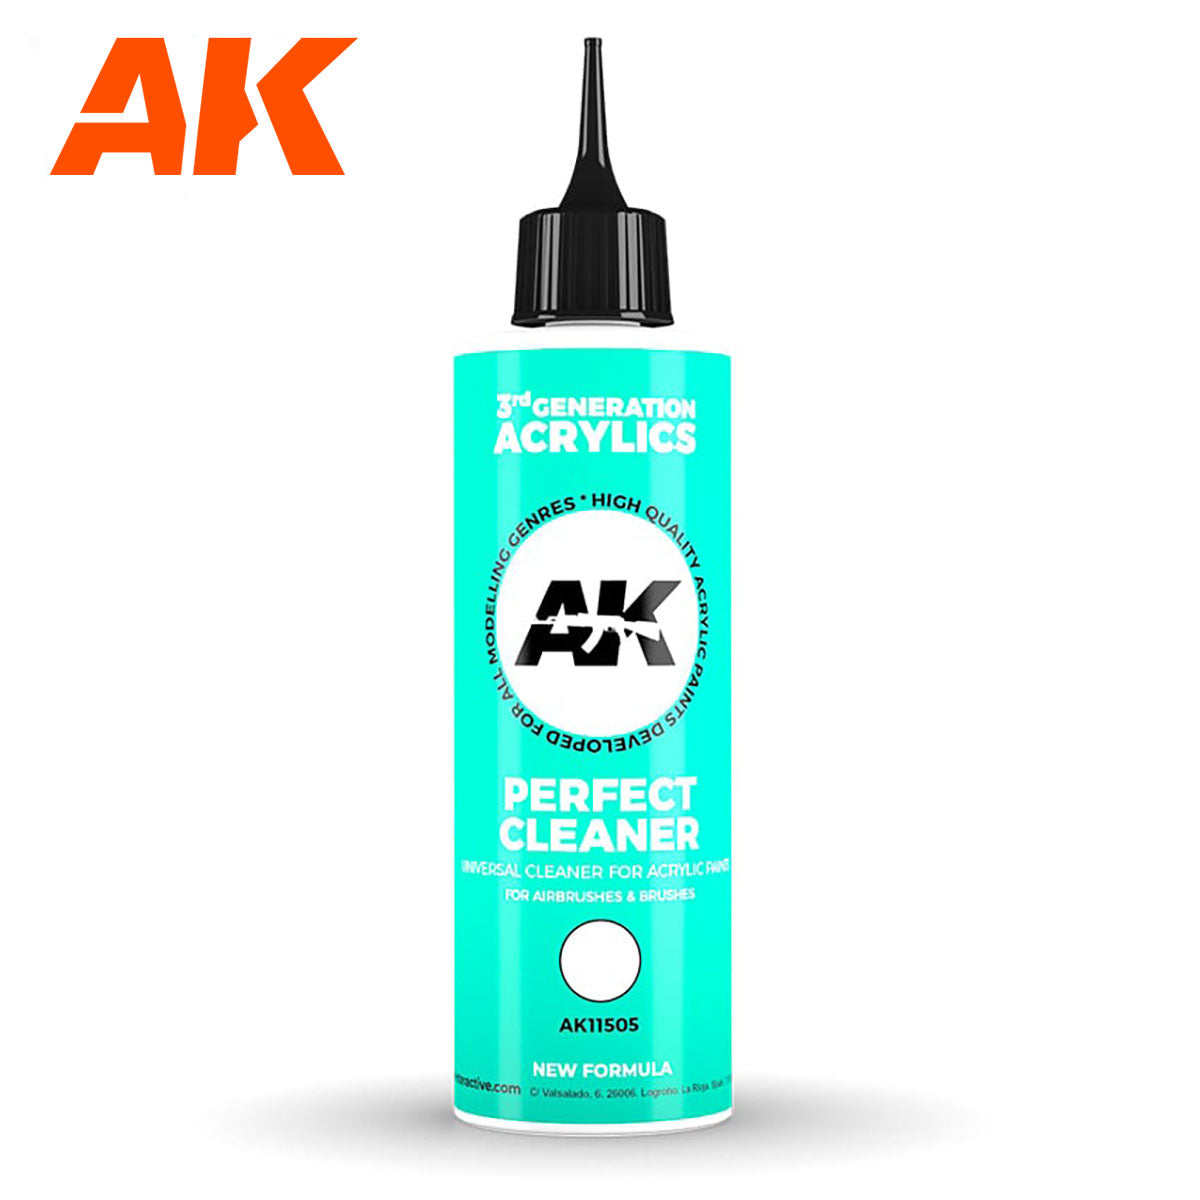 AK11505 - AK Perfect Cleaner 3GEN (250ml)